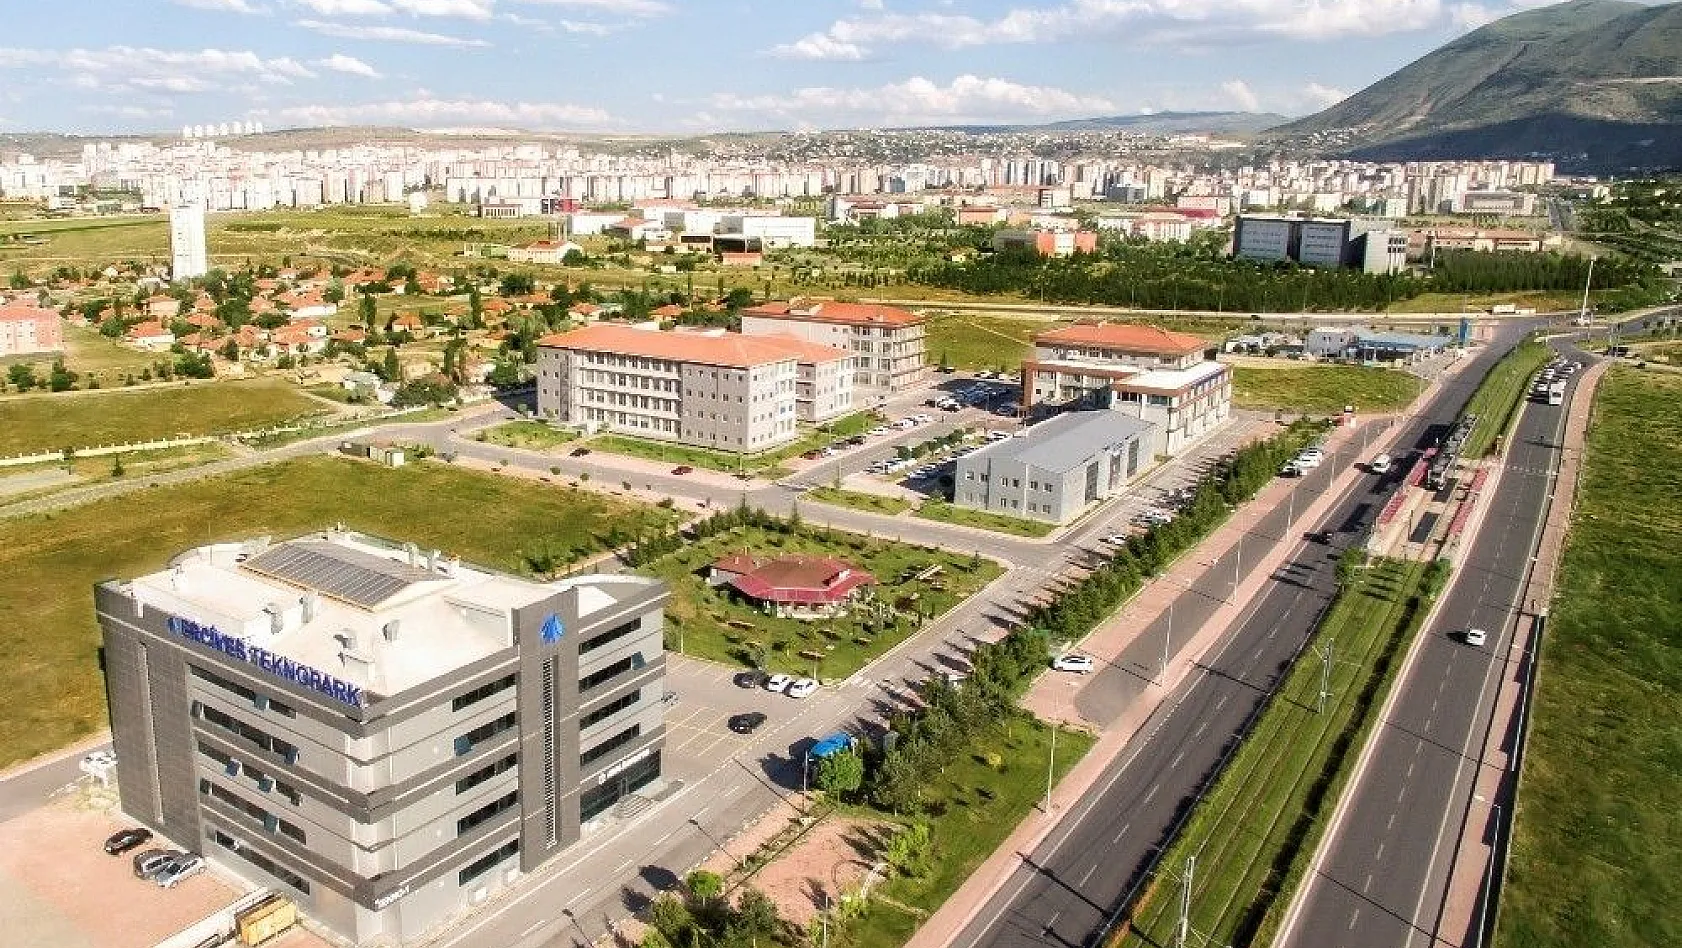 Erciyes Teknopark firmalarından Atlas Sayaç'tan önemli başarı
